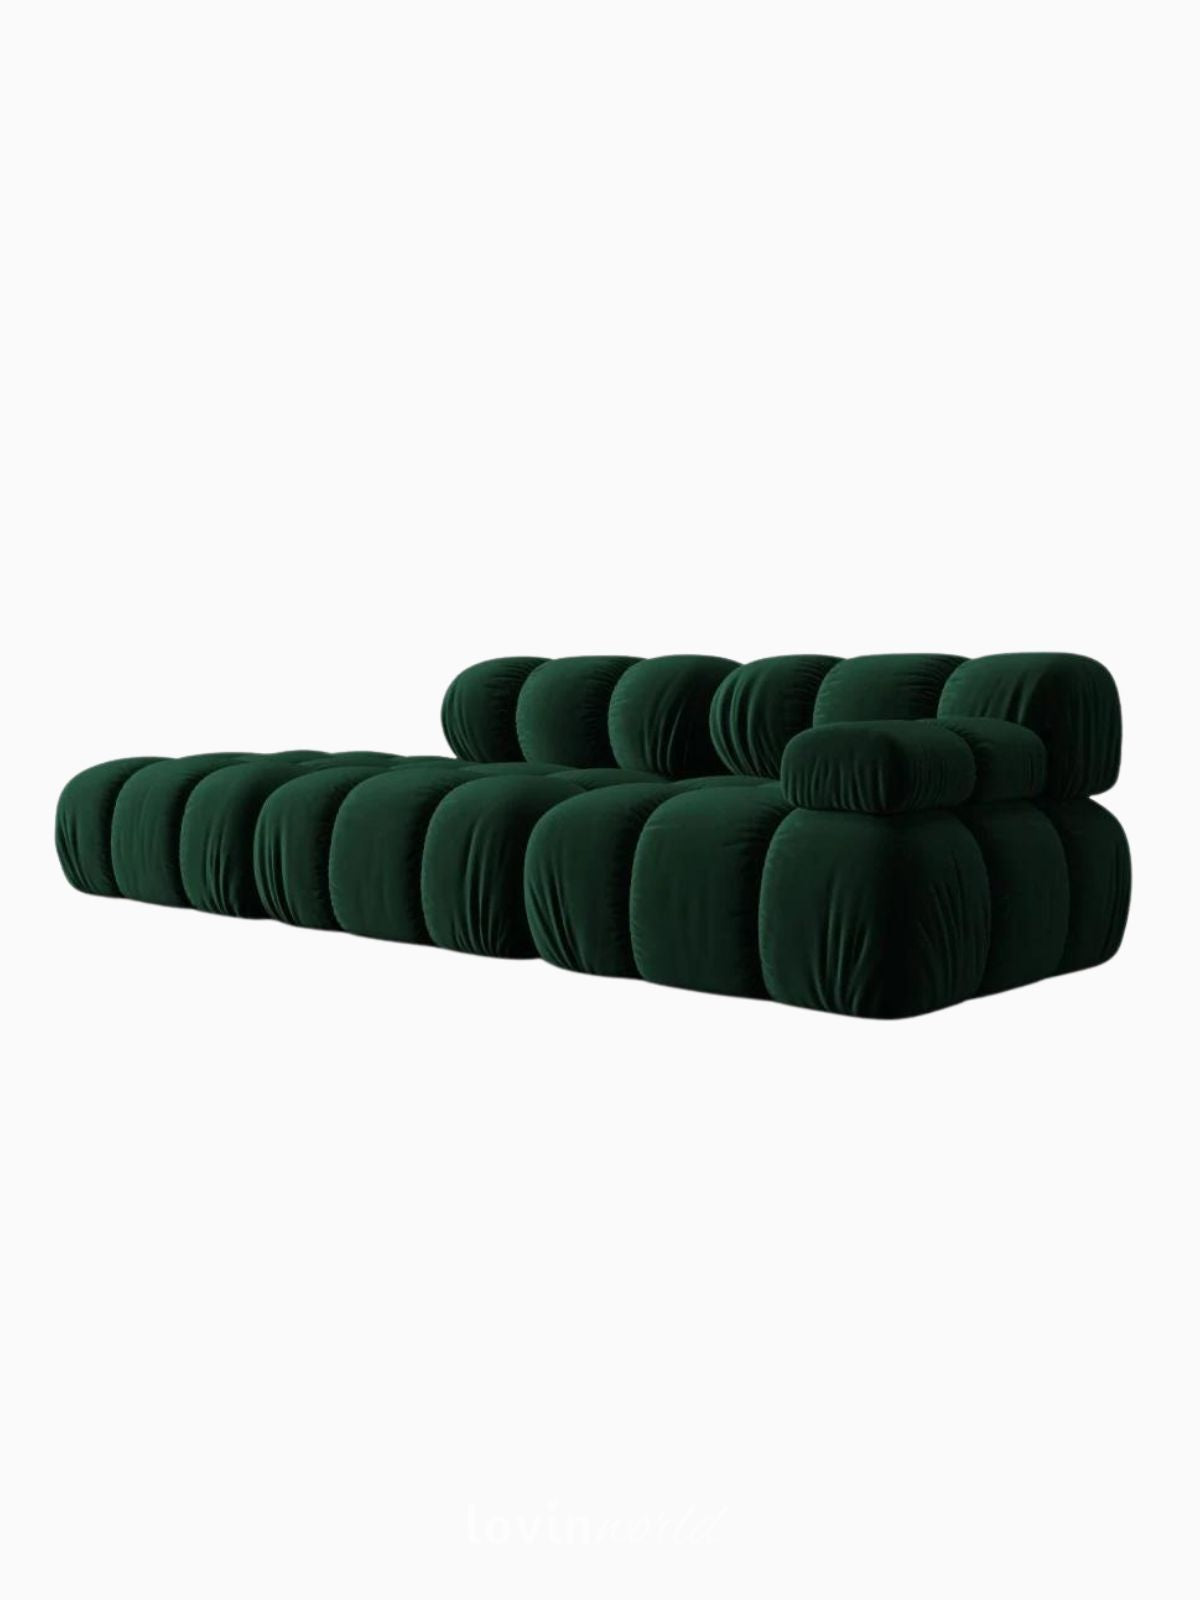 Divano modulare 4 sedute Bellis in velluto, colore verde-3